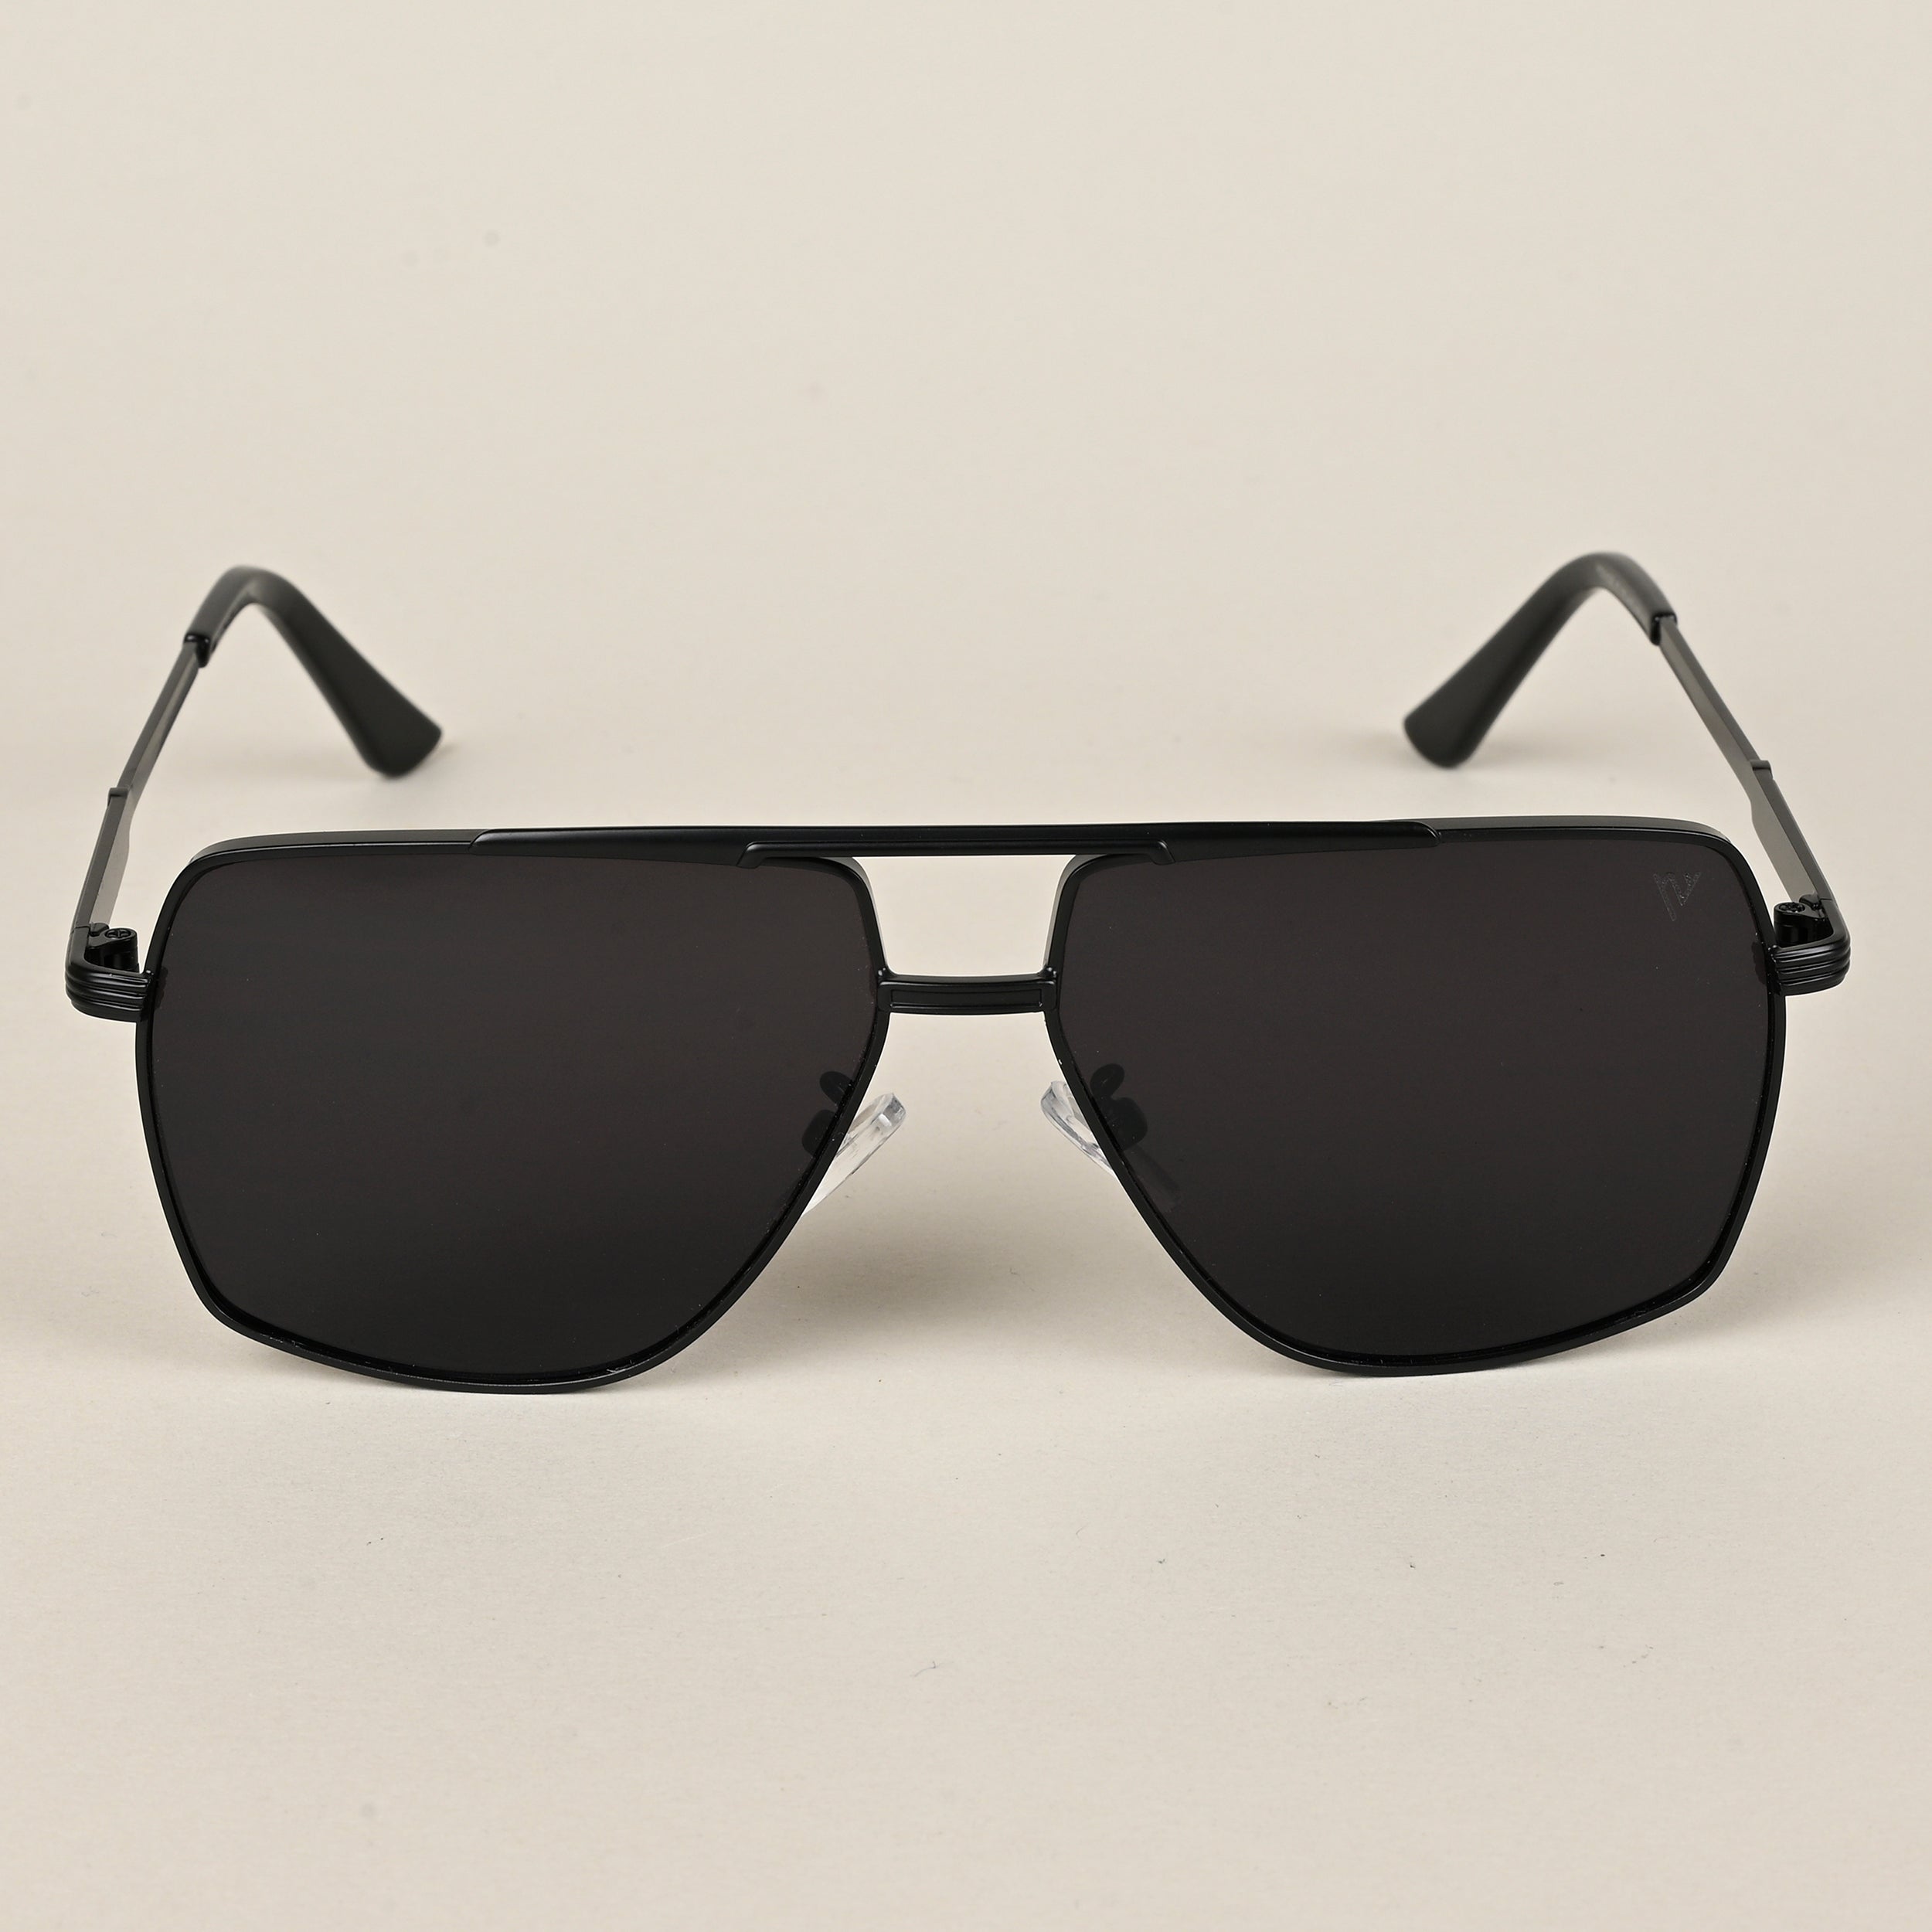 Voyage Aviator Sunglasses for Men & Women (Black Lens | Black Frame  - MG5200)